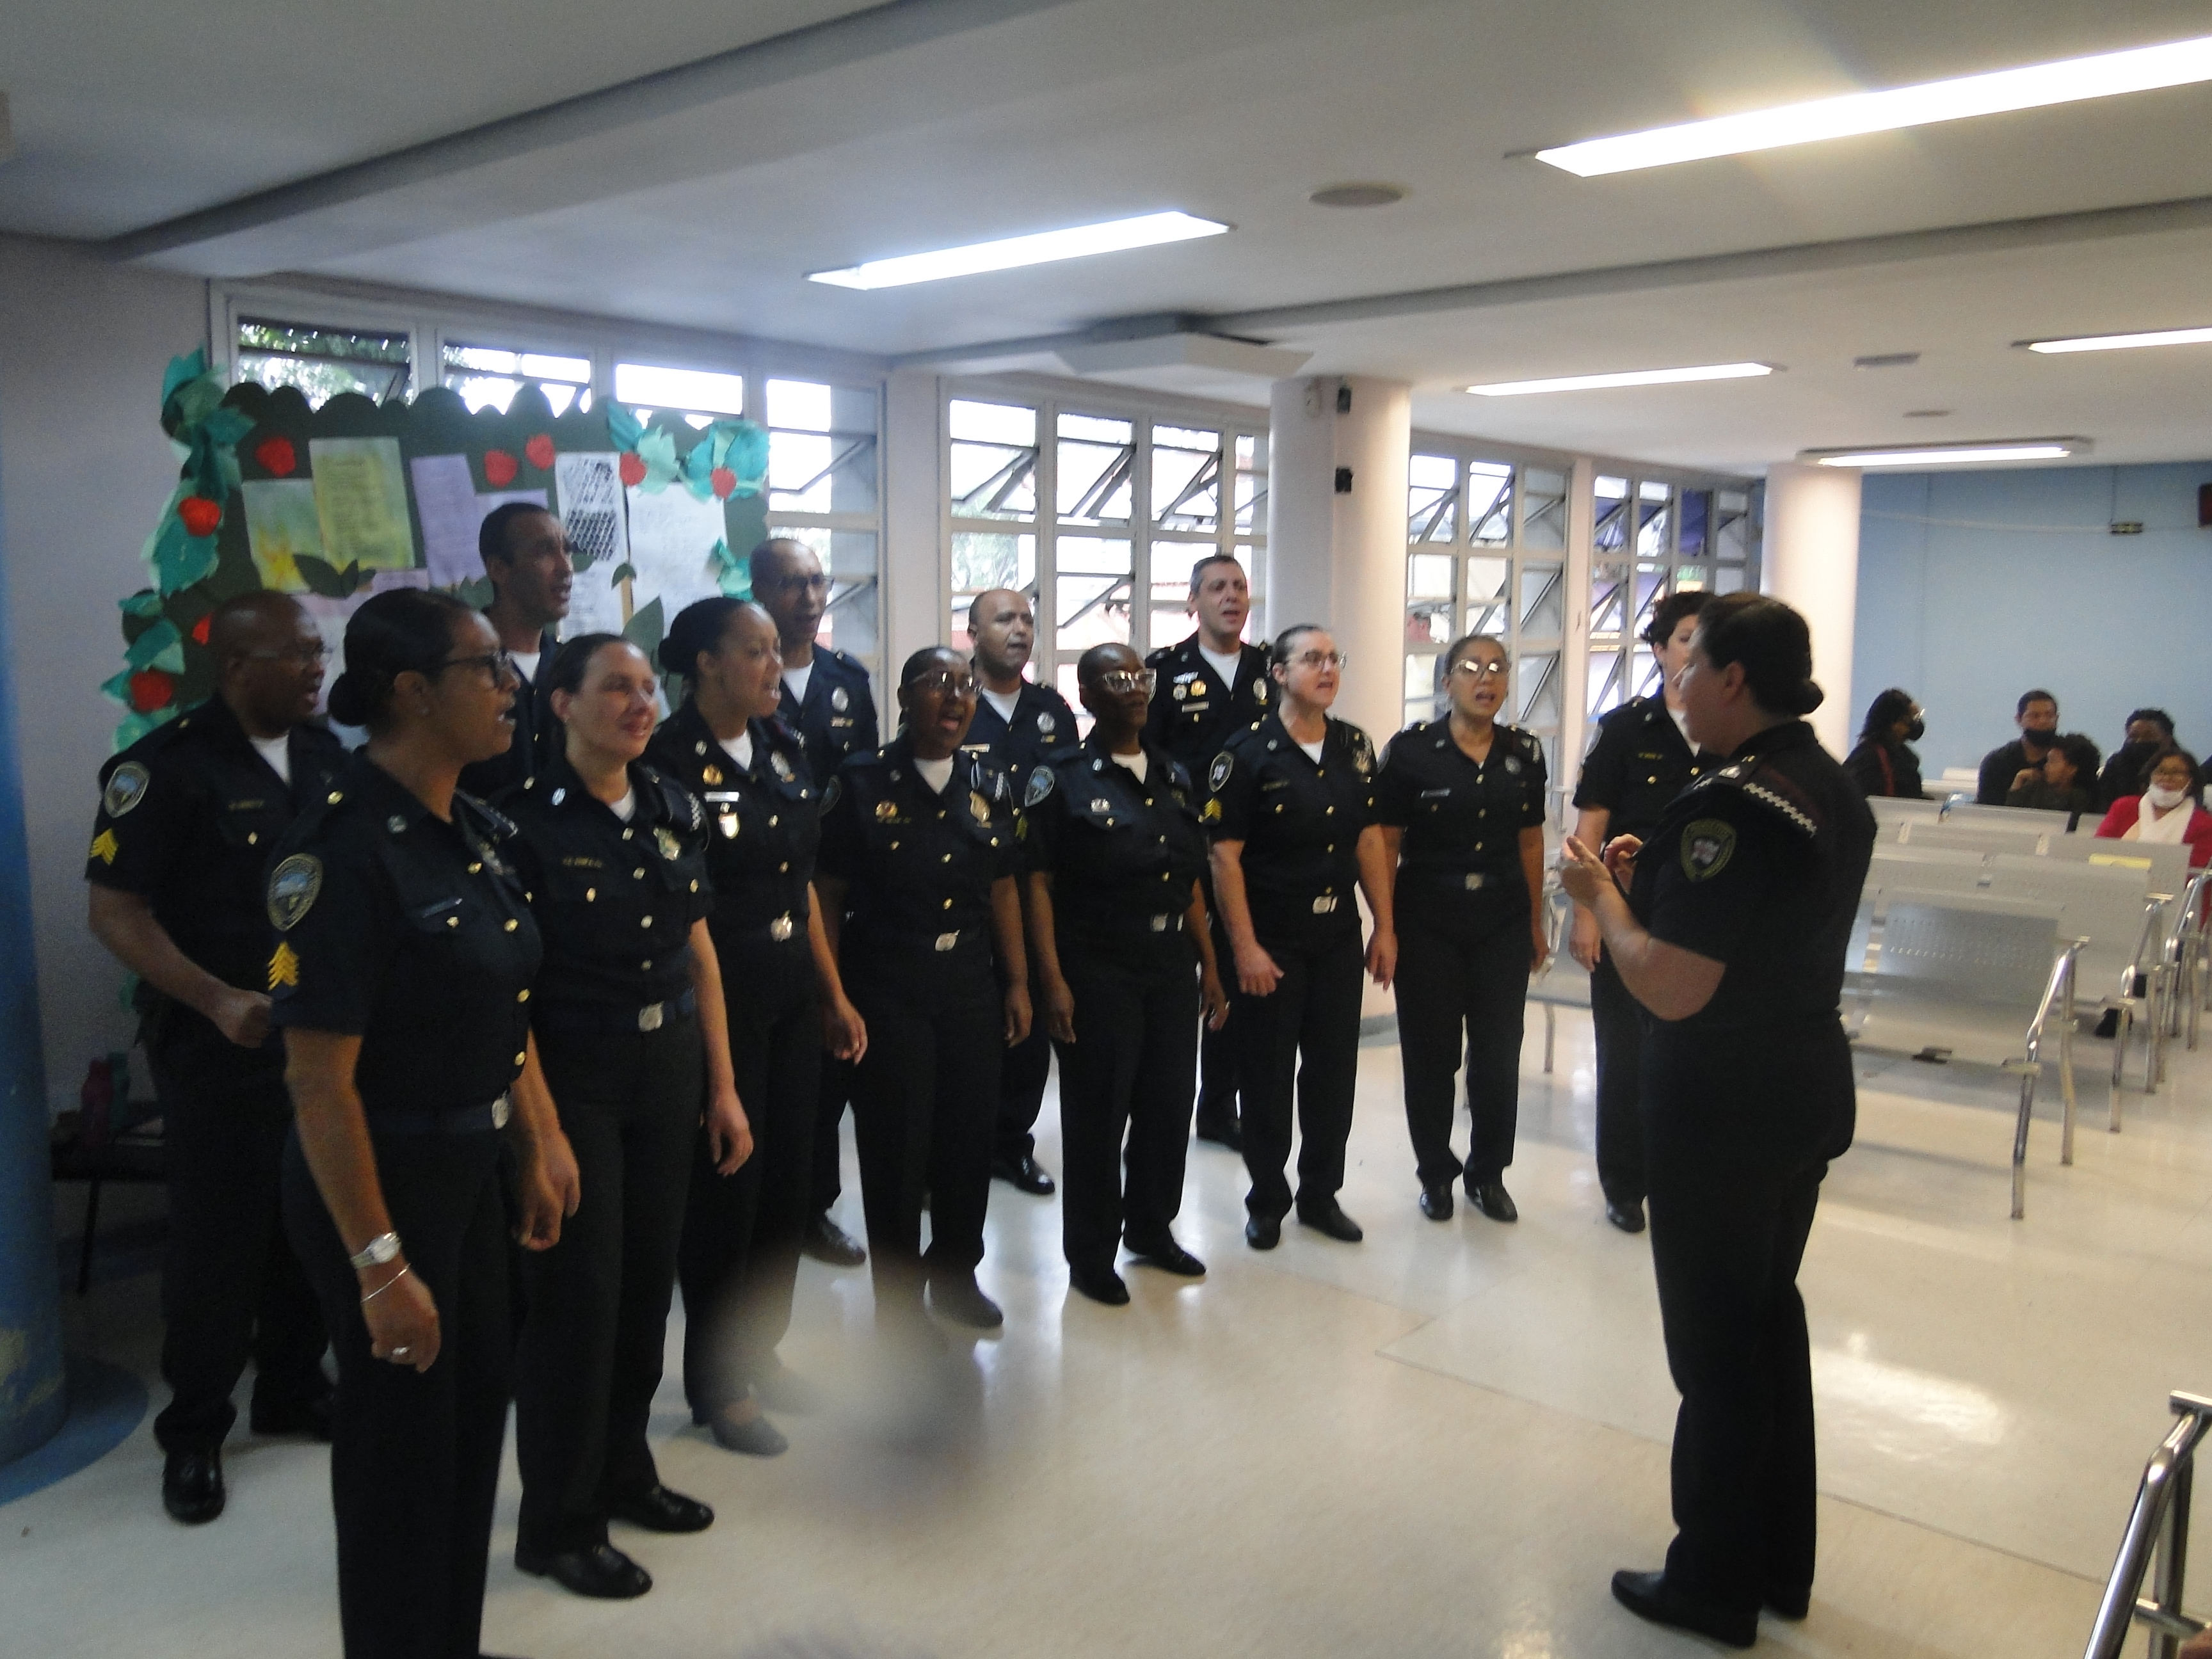 Imagem da Guarda Civil Metropolitana em apresentação no saguão do hospital